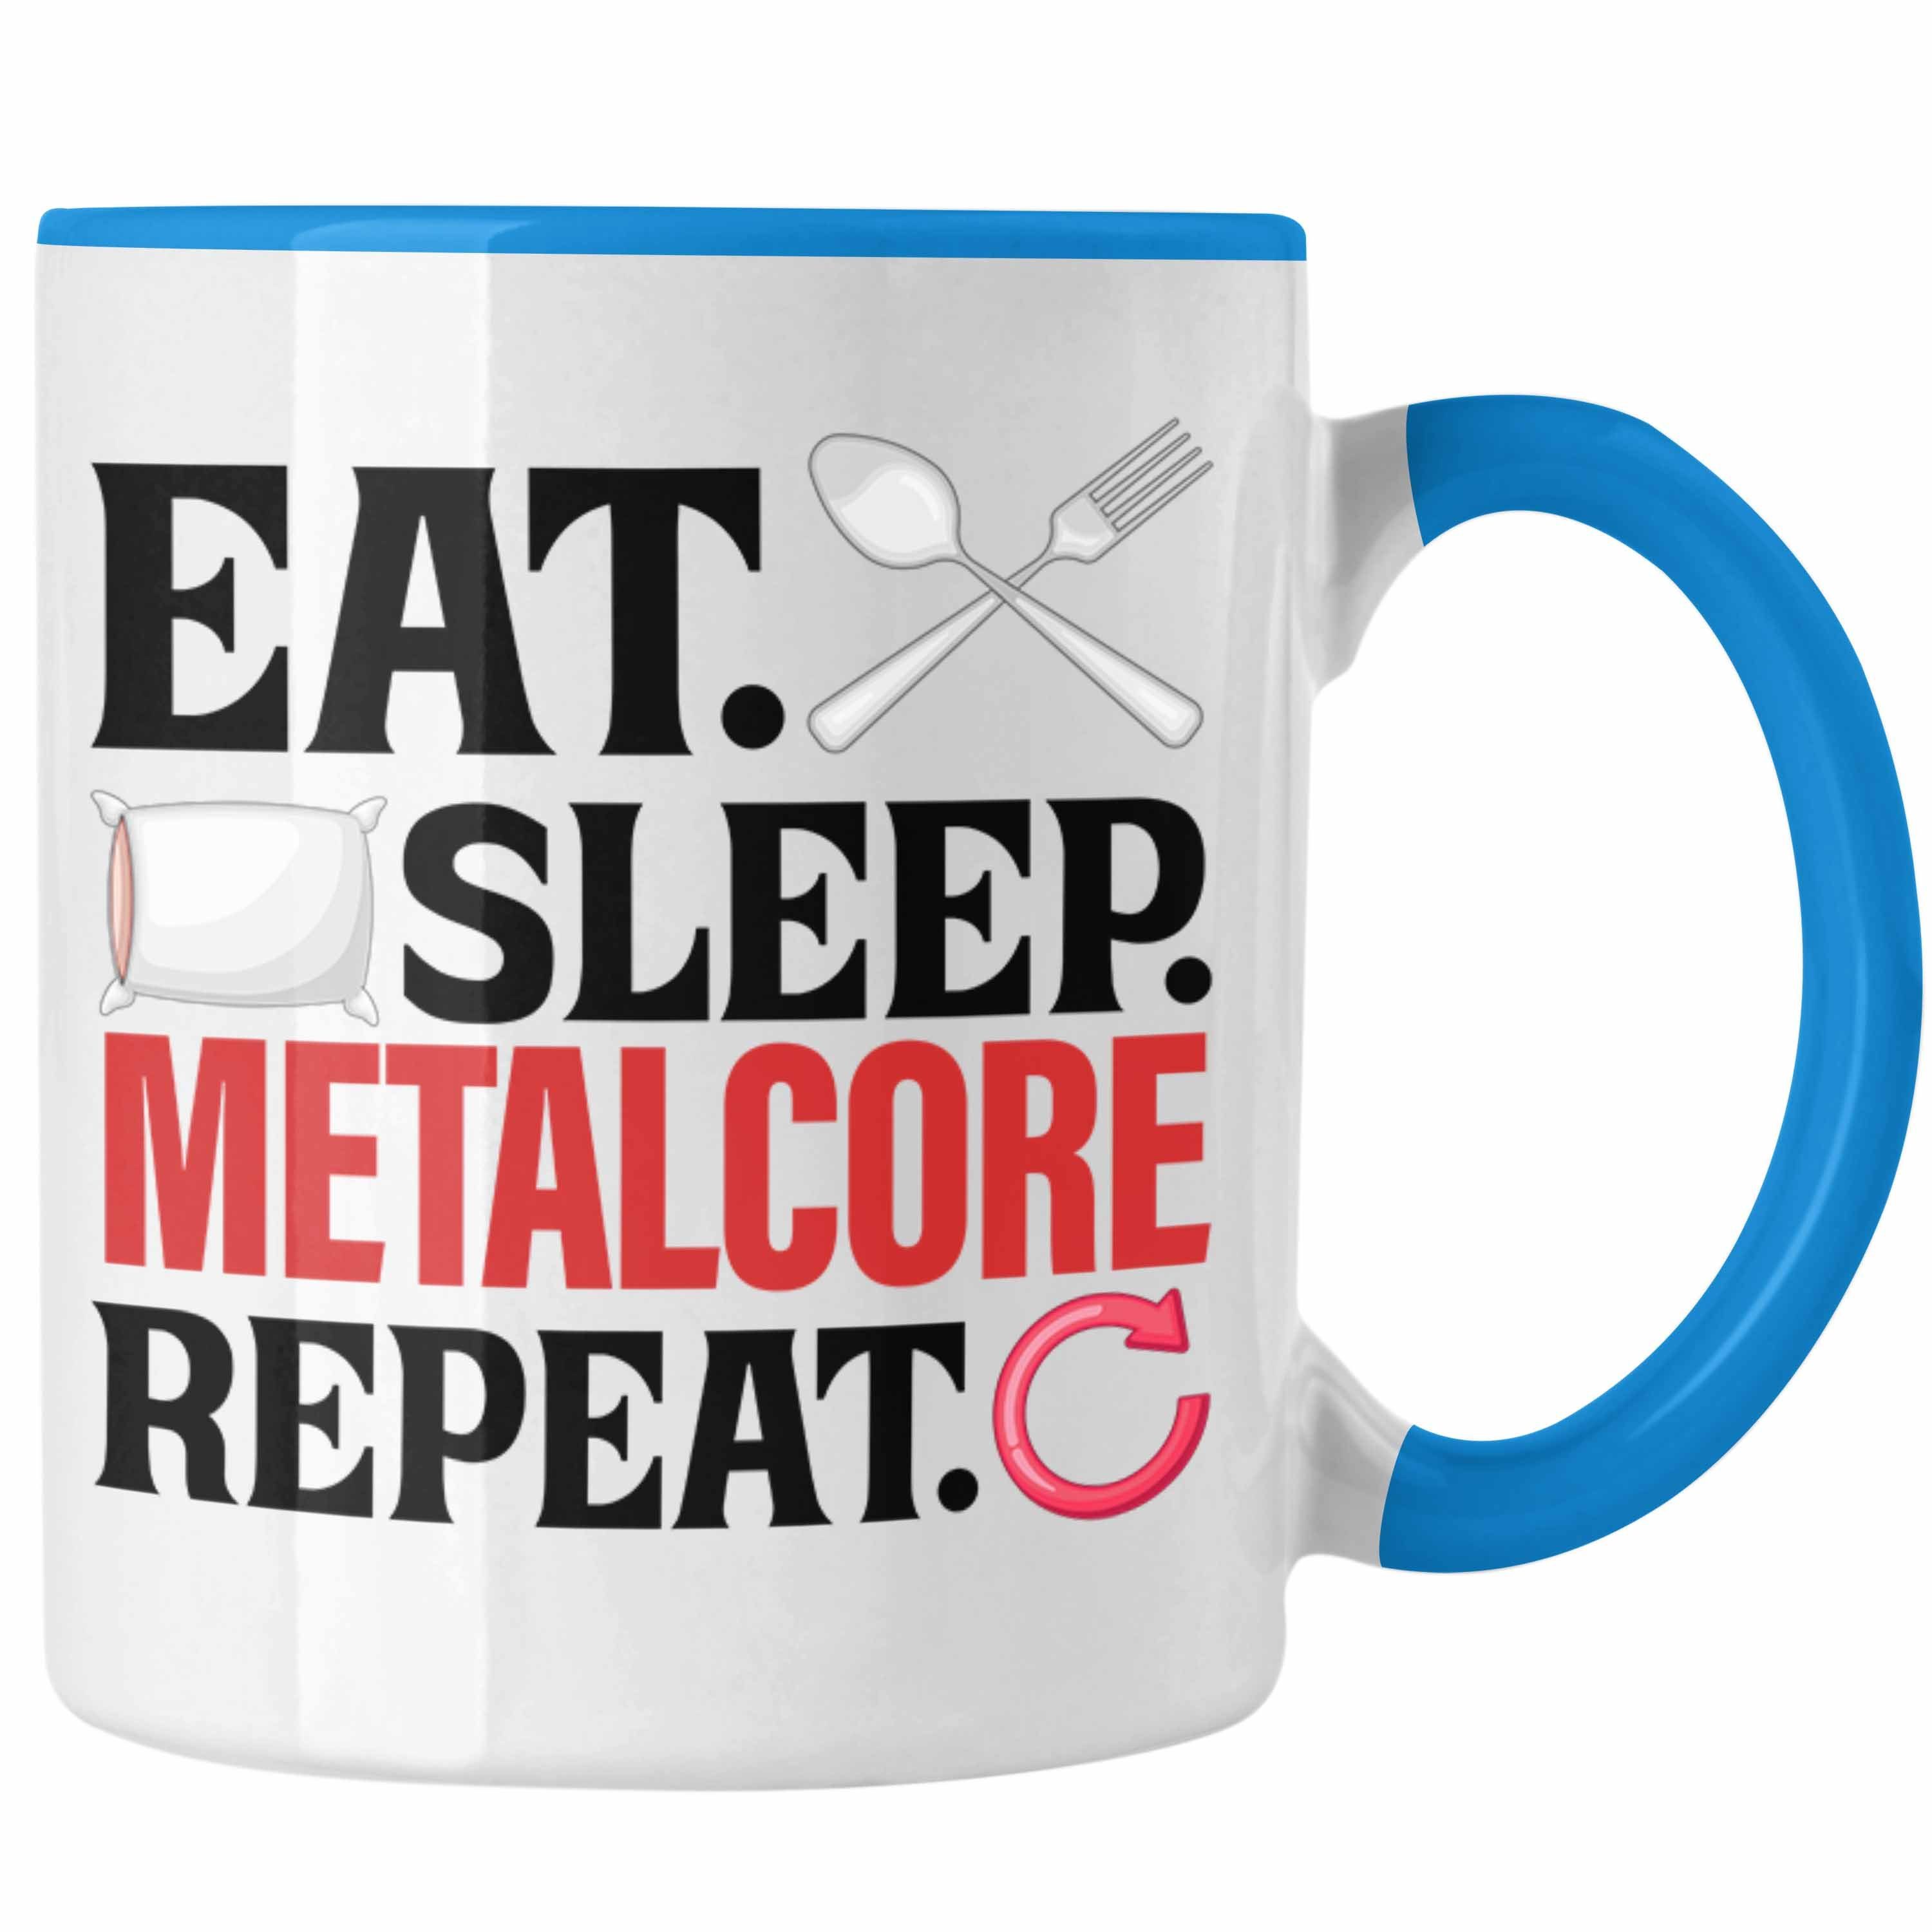 Repeat Metal Metalcore Sleep Trendation Blau Tasse Tasse Heavy Geschenk Eat Musik